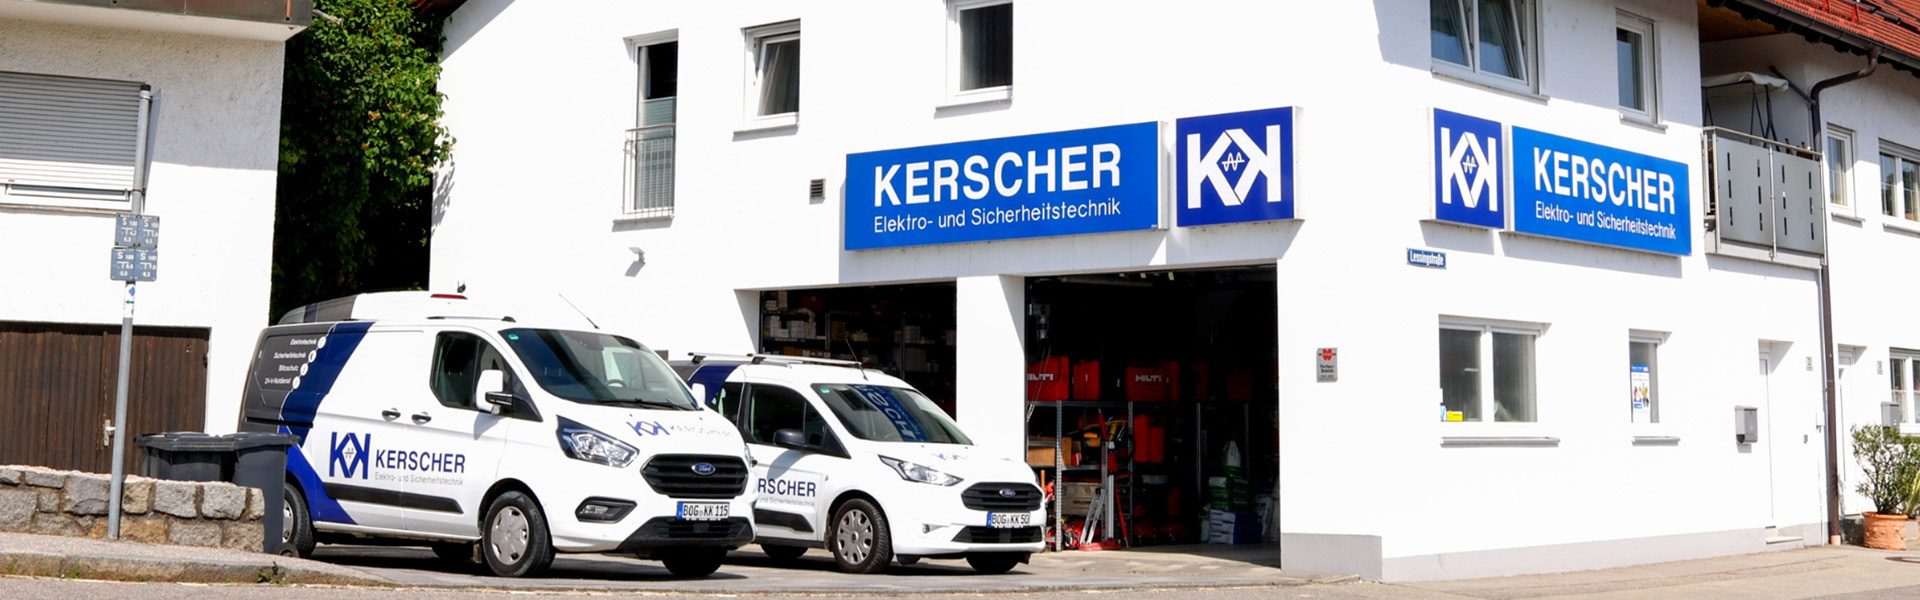 Kerscher Elektro- u. Sicherheitstechnik GmbH & Co.KG in Bogen